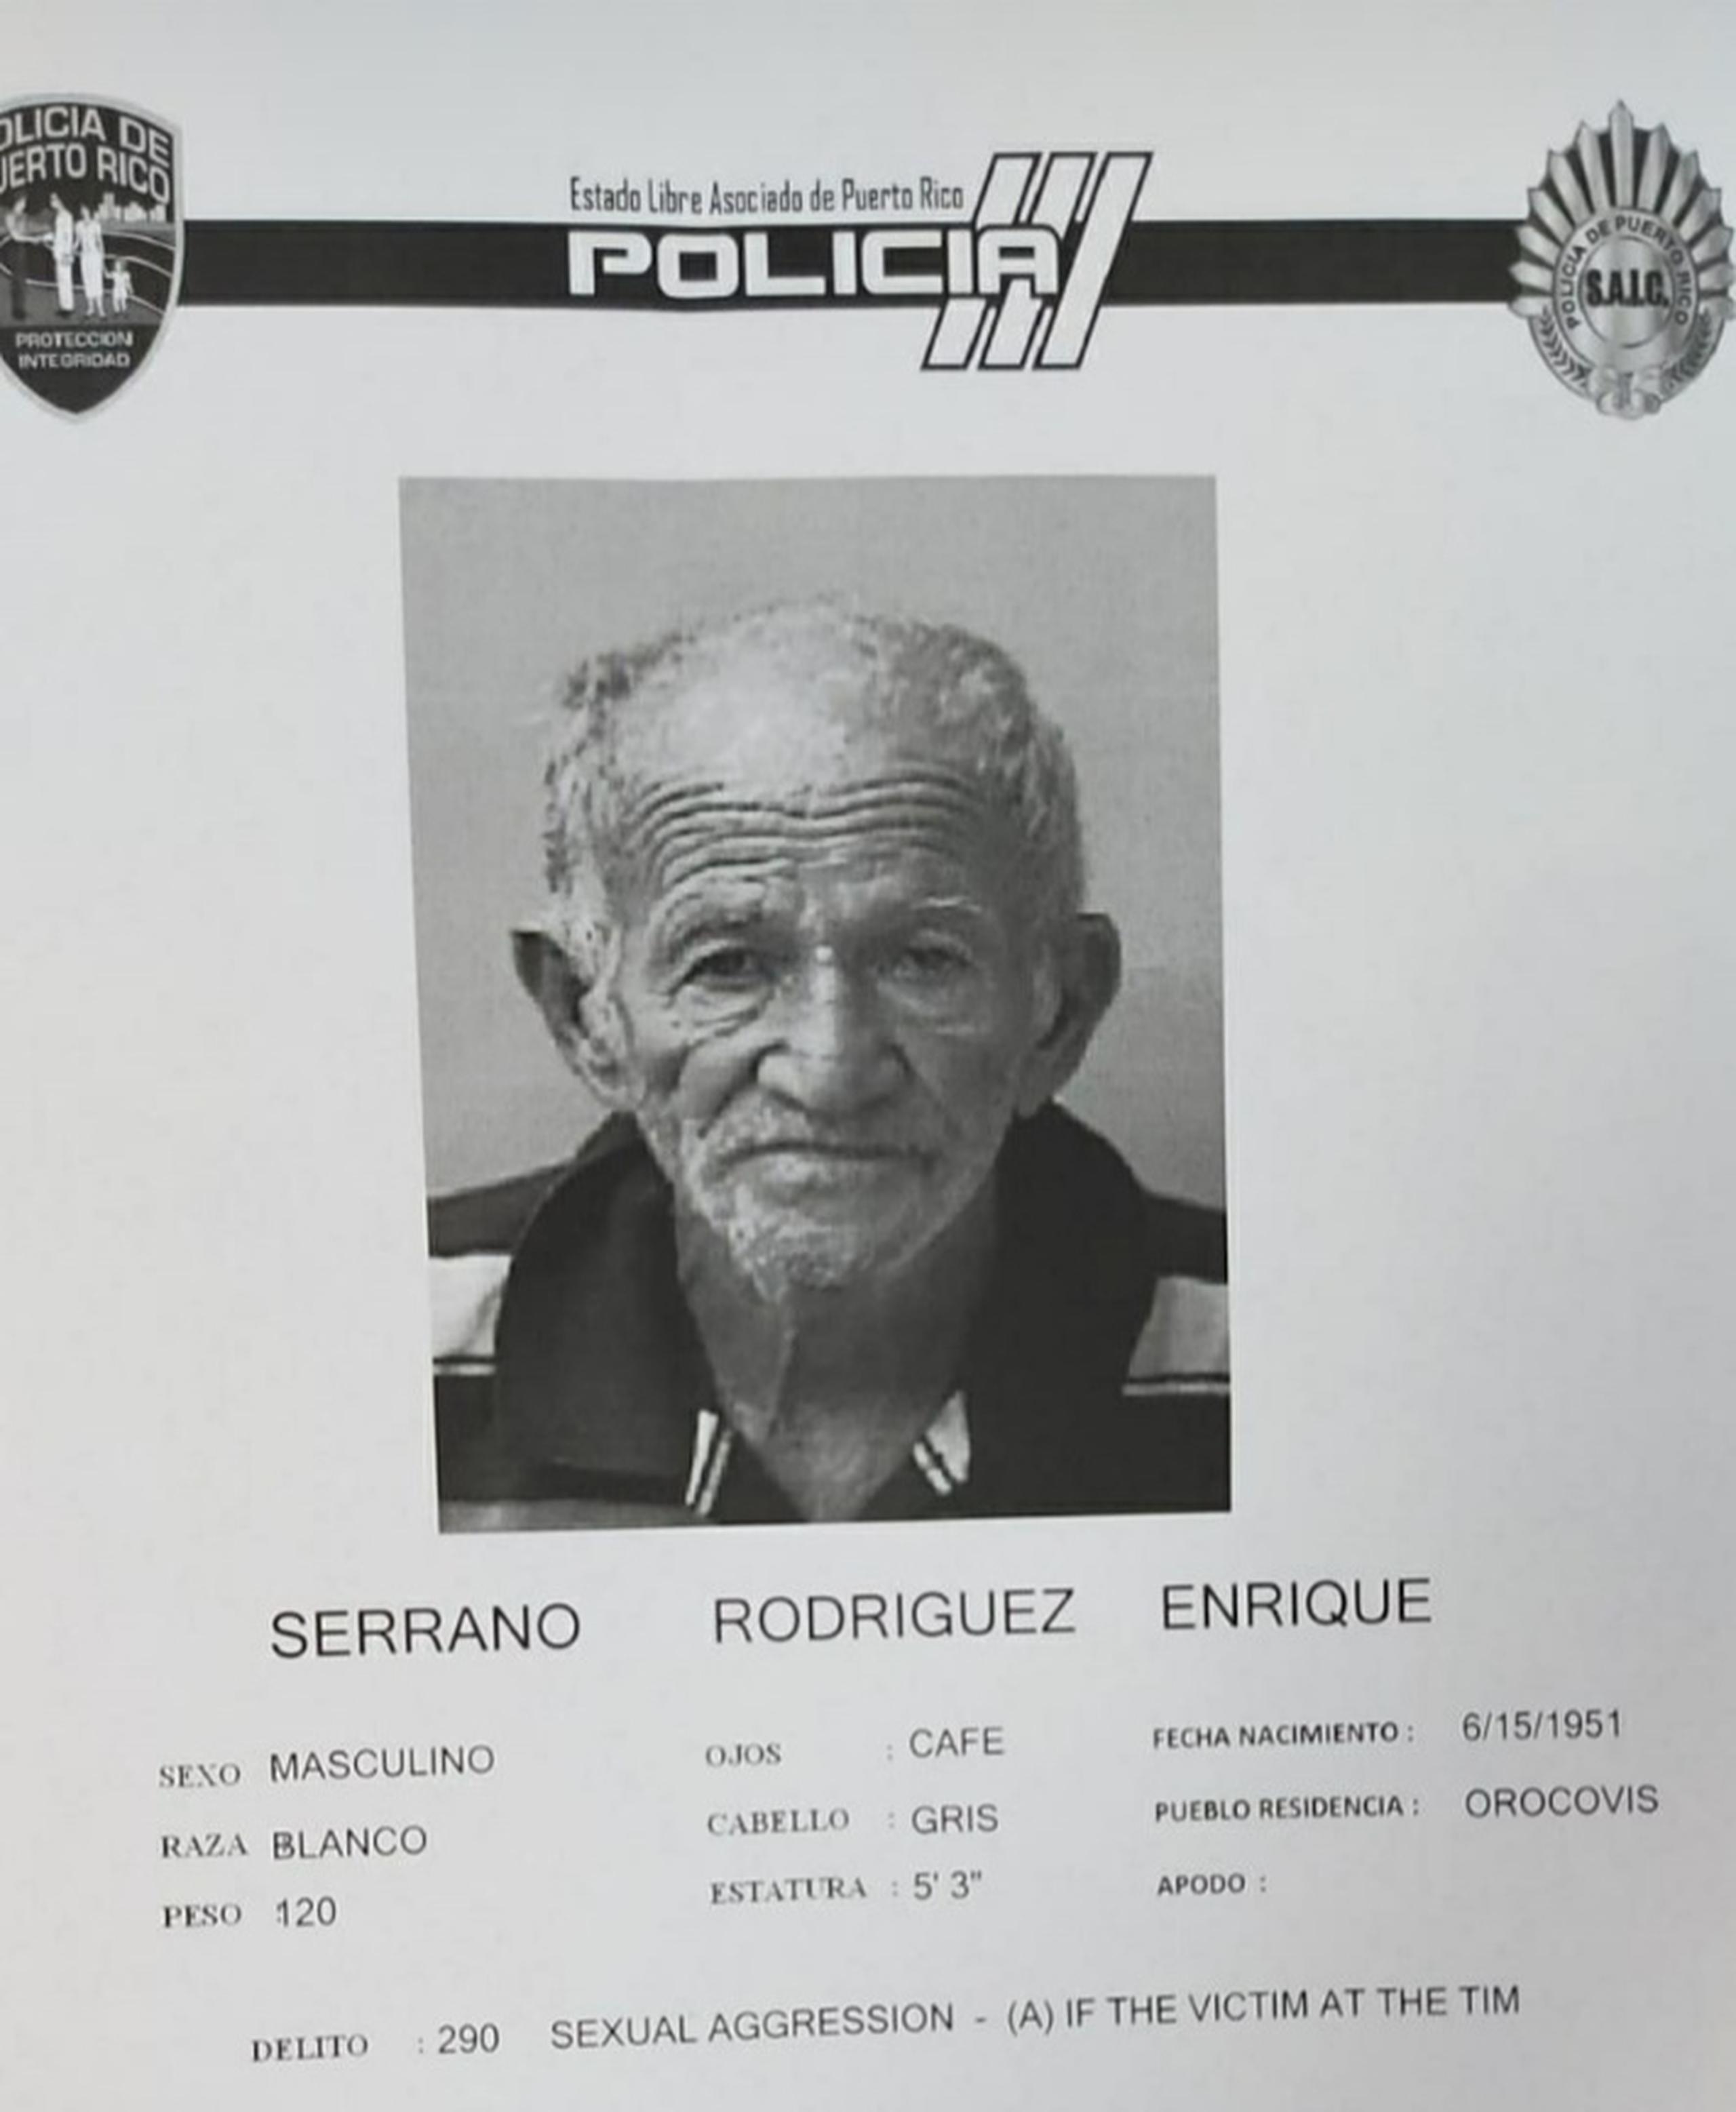 Cargos criminales por agredir sexualmente a un niño de seis años fueron radicados ayer en el Tribunal de Aibonito contra Enrique Serrano Rodríguez de 69 años, por hechos ocurridos el 12 de enero, en Orocovis.